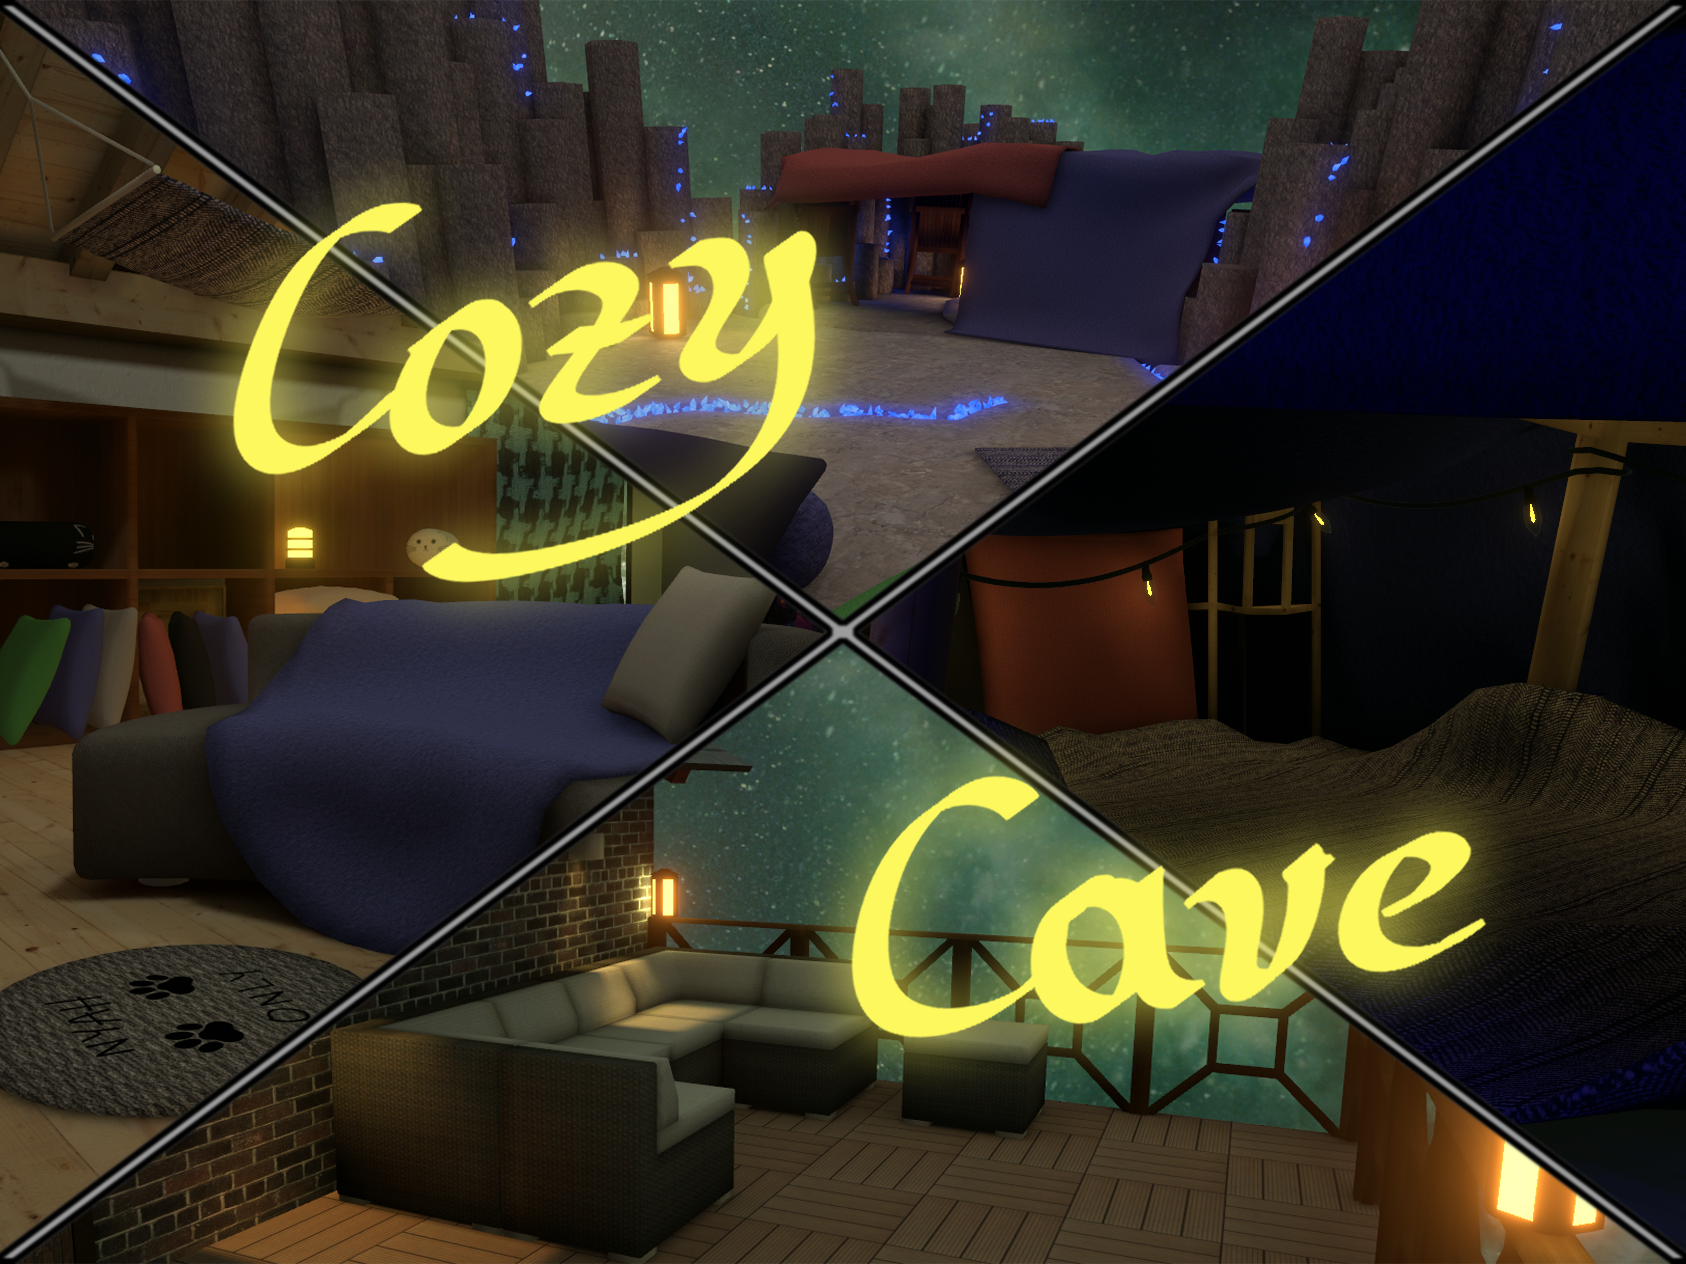 Cozy Cave